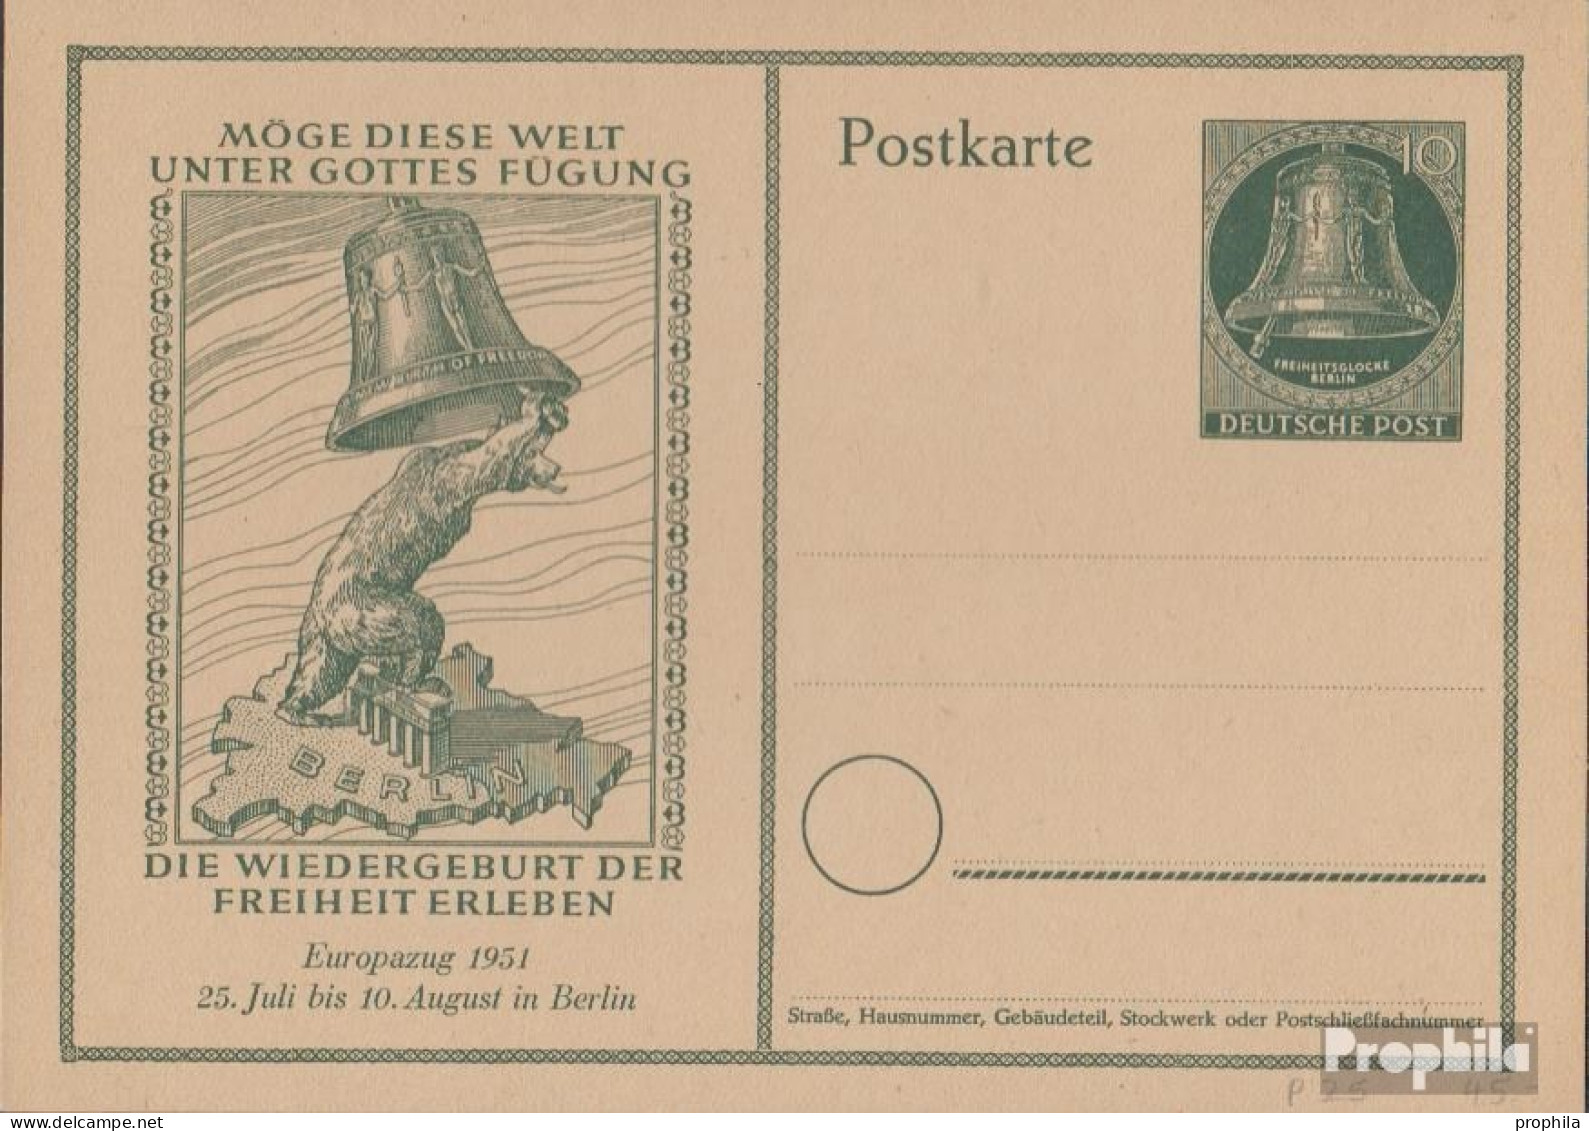 Berlin (West) P25 Amtliche Postkarte Gefälligkeitsgestempelt Gebraucht 1951 Glocke - Cartes Postales - Oblitérées